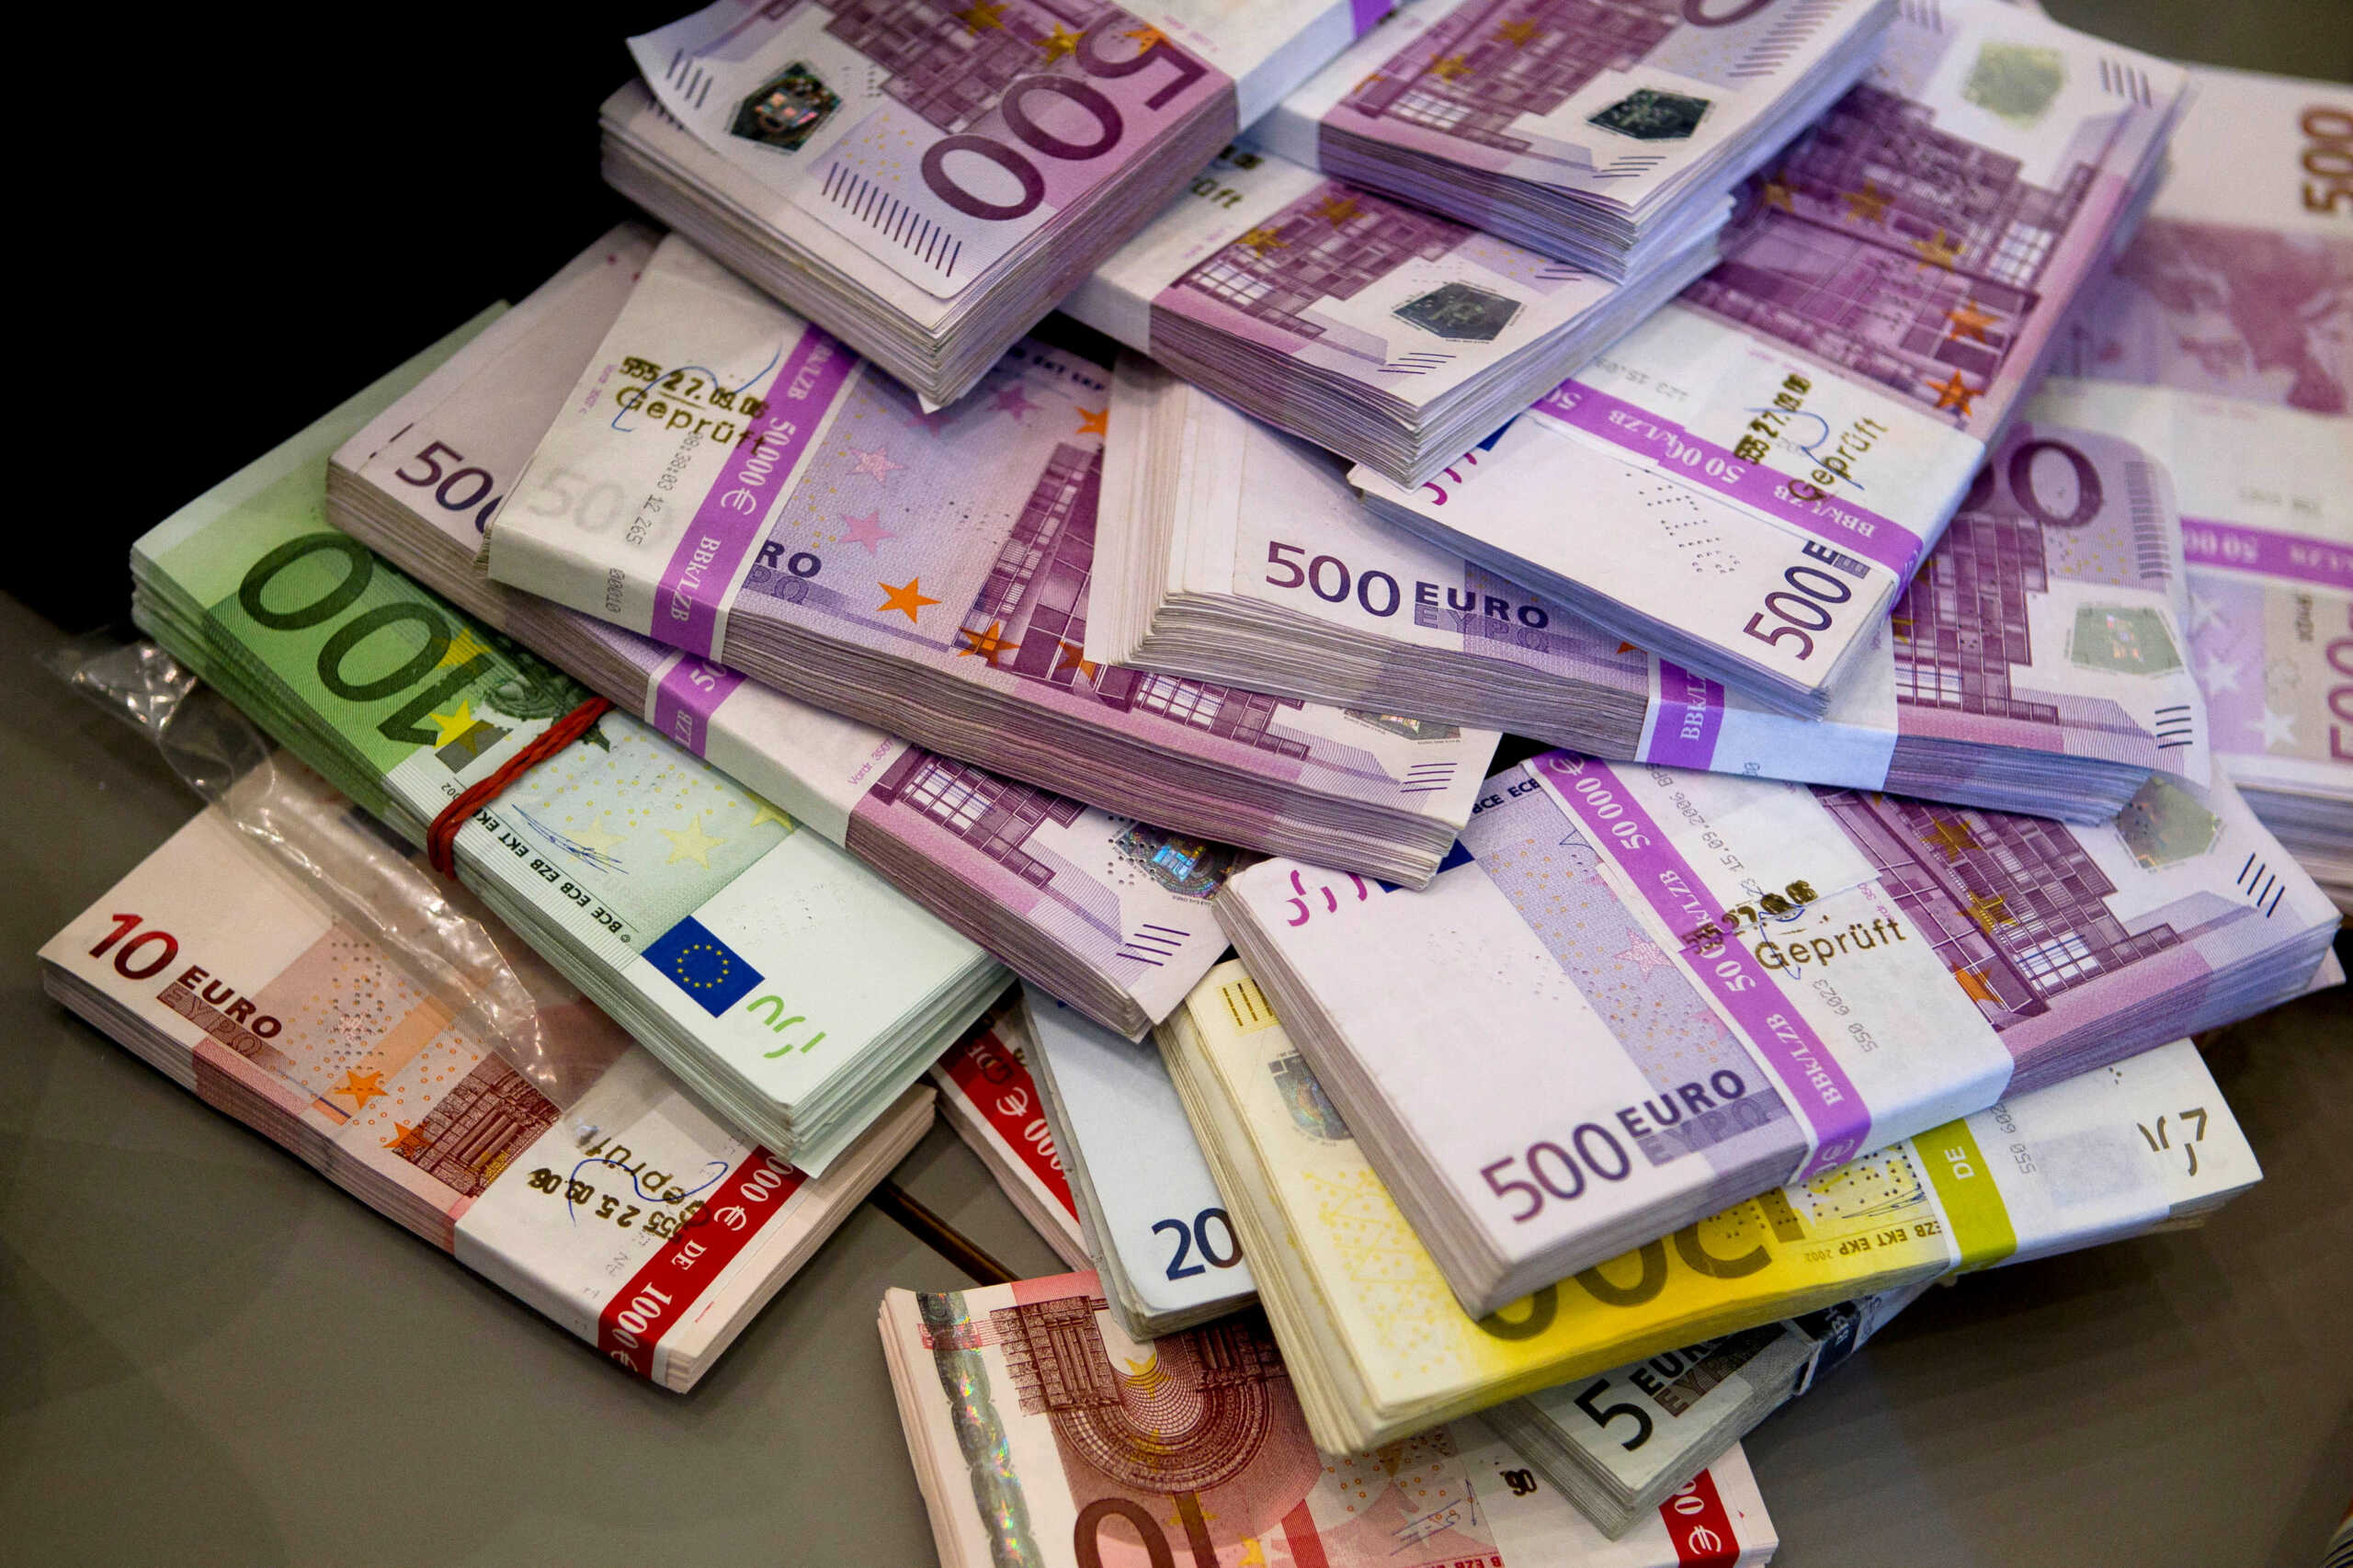 Νίκος Παπαθανάσης: Νέα προγράμματα ΕΣΠΑ για ελεύθερους επαγγελματίες και νεοσύστατες επιχειρήσεις – Επιδότηση έως 200.000 ευρώ